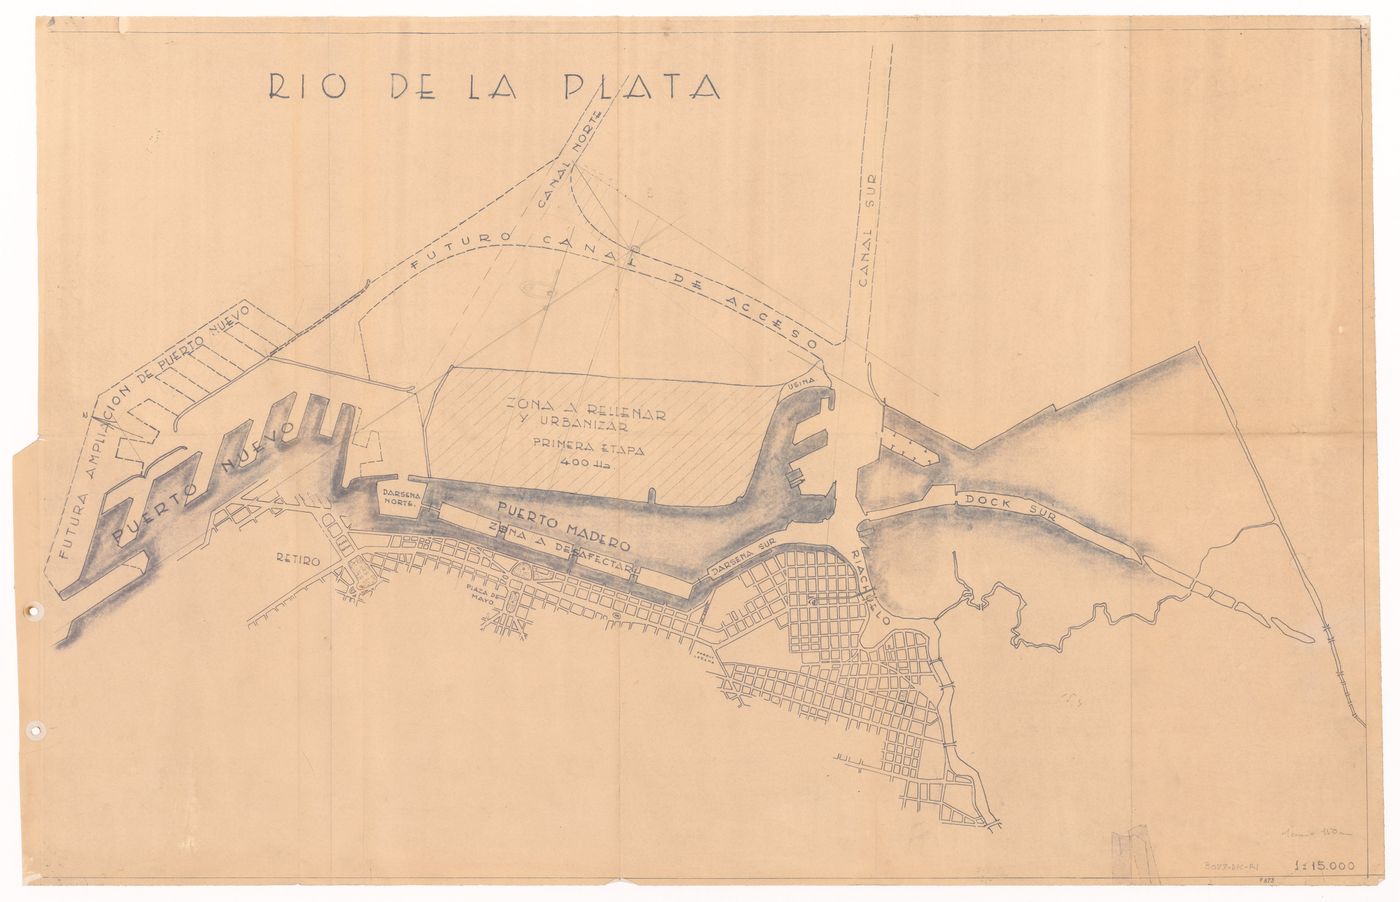 Site map for Cruz en el Rio de la Plata, Buenos Aires, Argentina